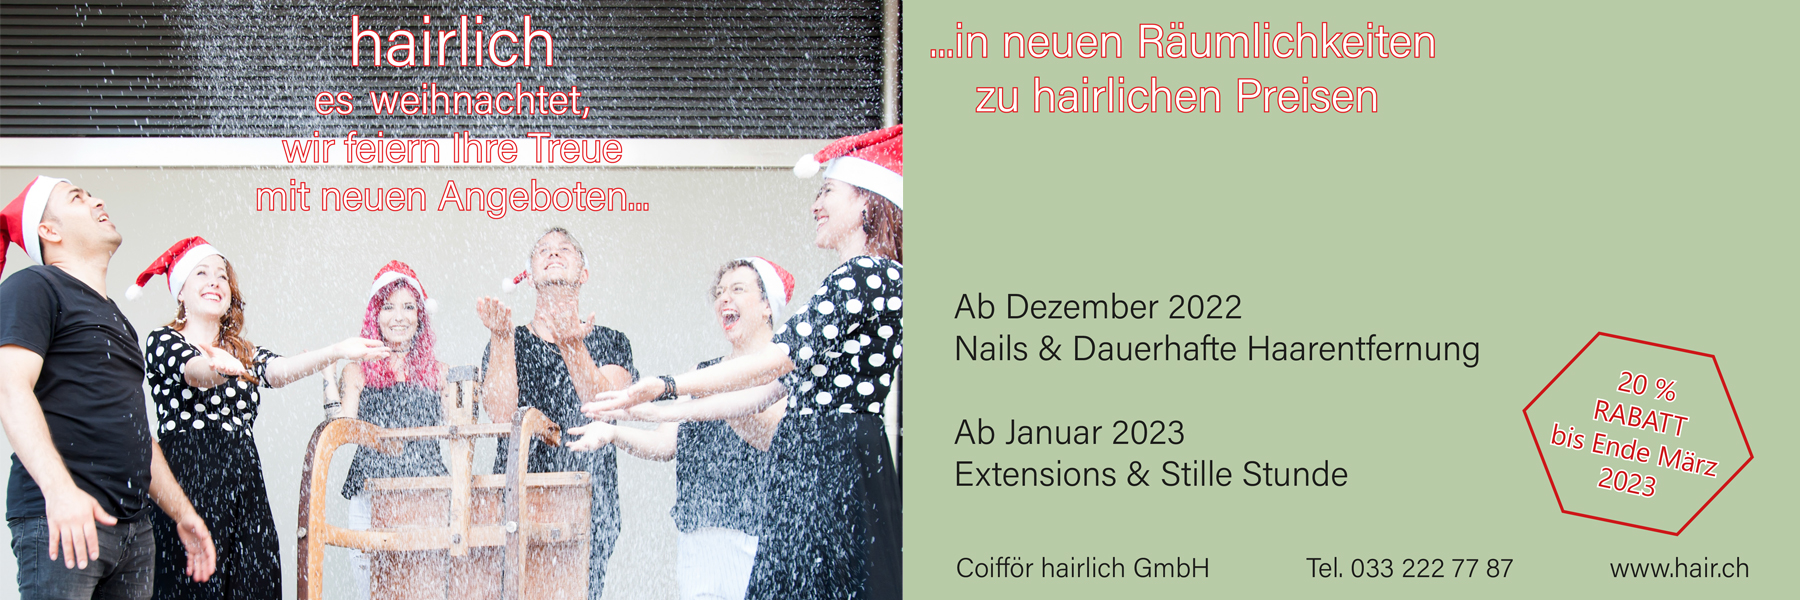 Coifför hairlich GmbH - Weihnachtkarte 2022